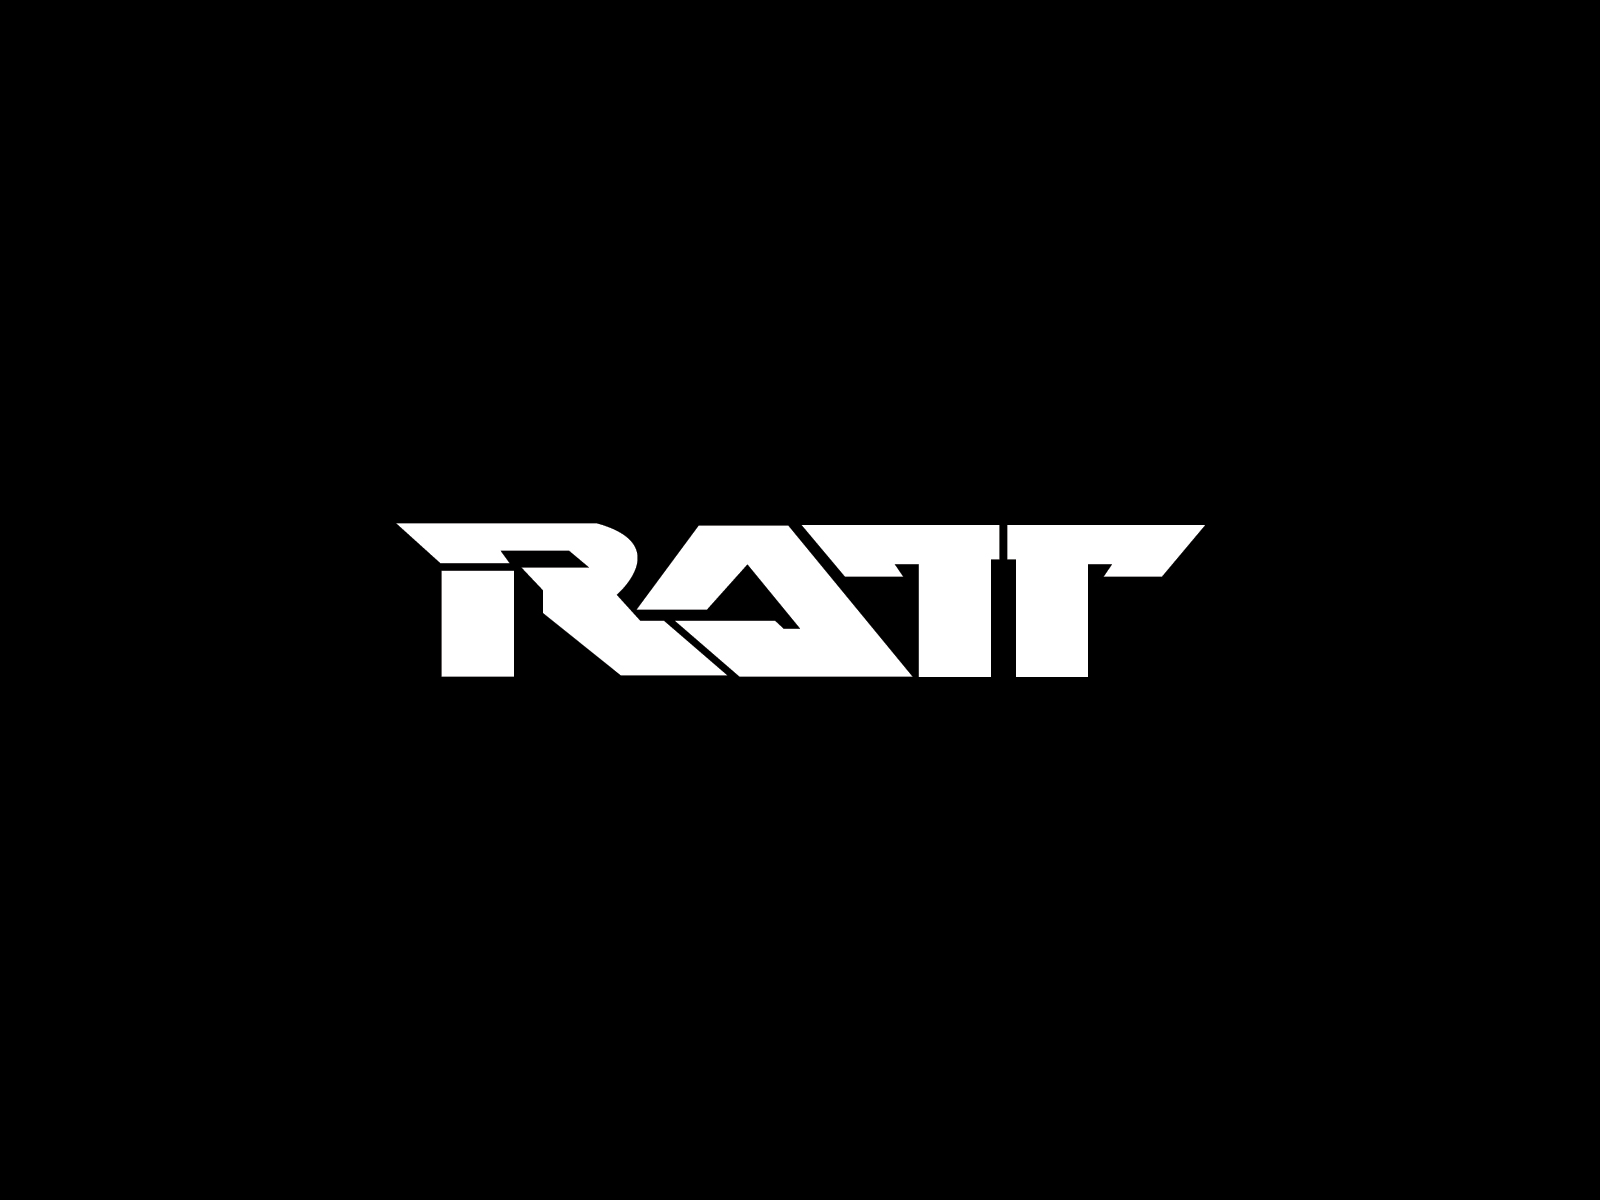 Ratt Band Logo Wallpaper